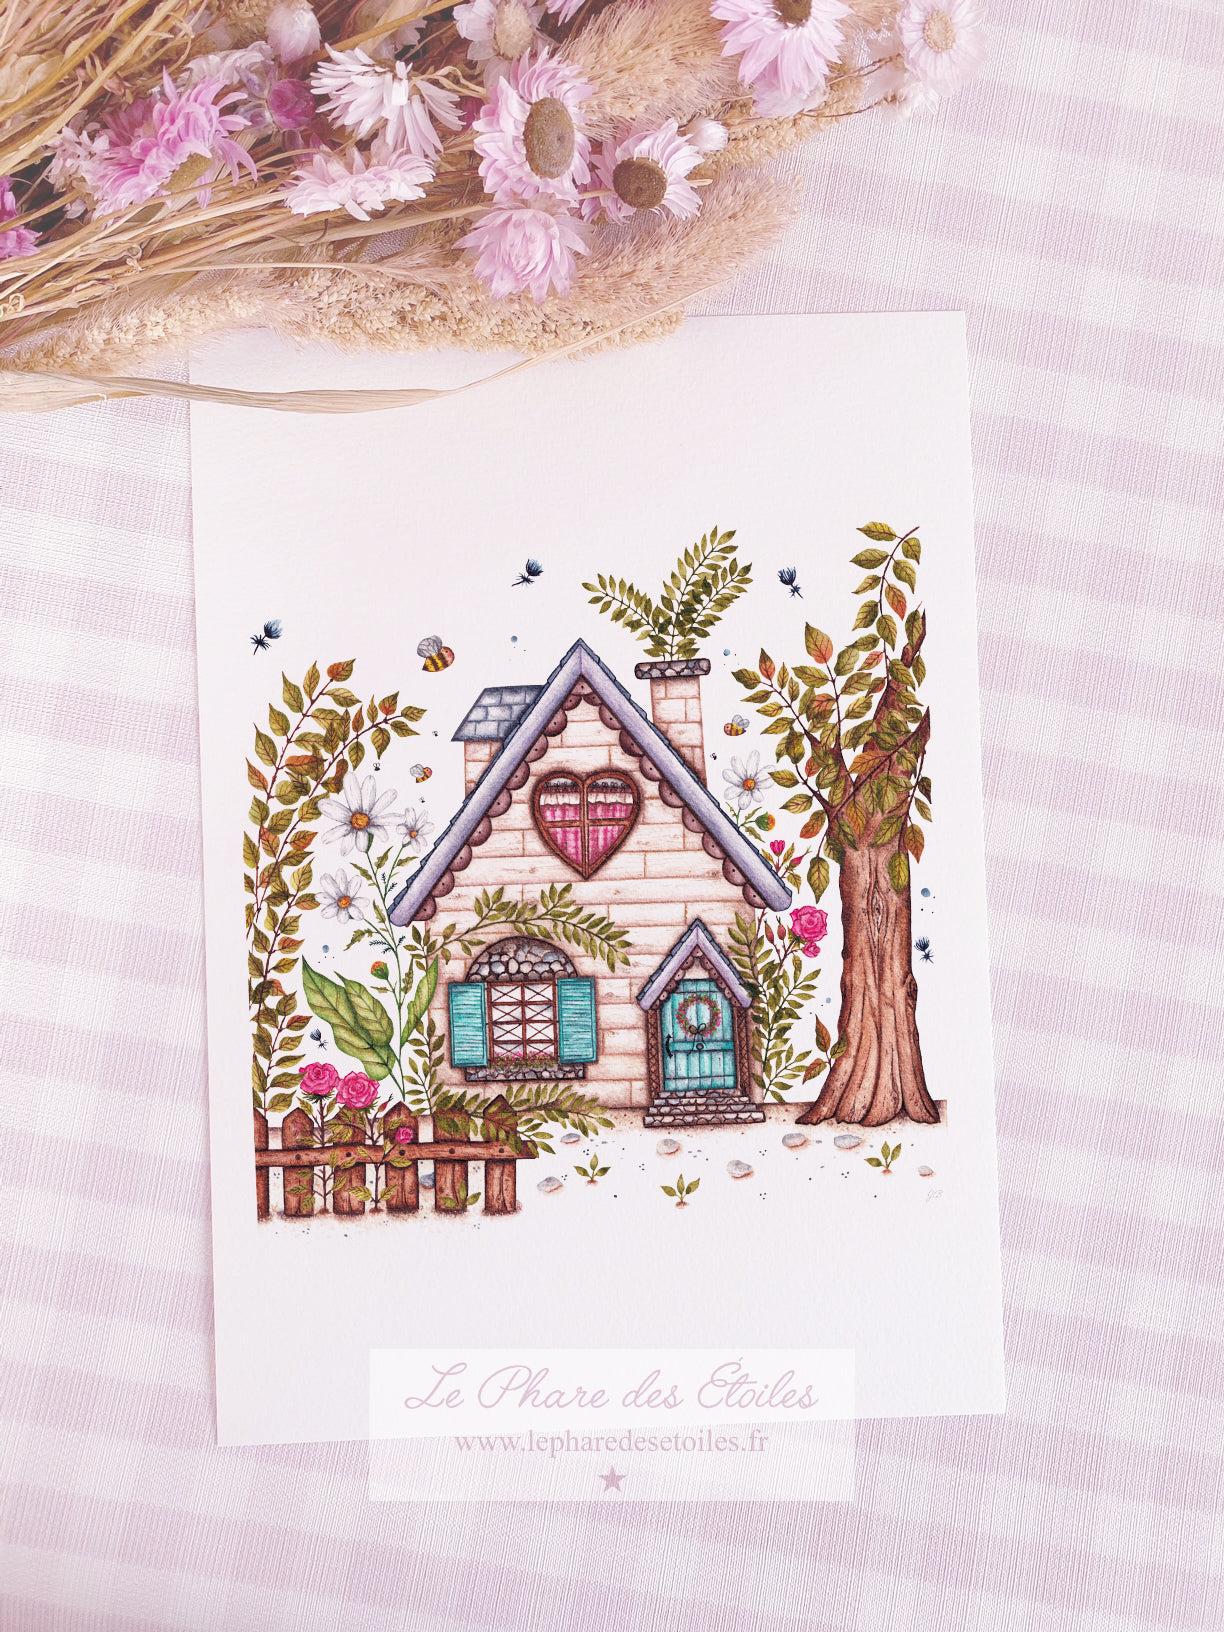 Affiche illustrée à l'aquarelle sur le thème du printemps, des fleurs, représentée par une maison fleurie. Illustration à encadrer. Décoration intérieure et chambre pour enfants.